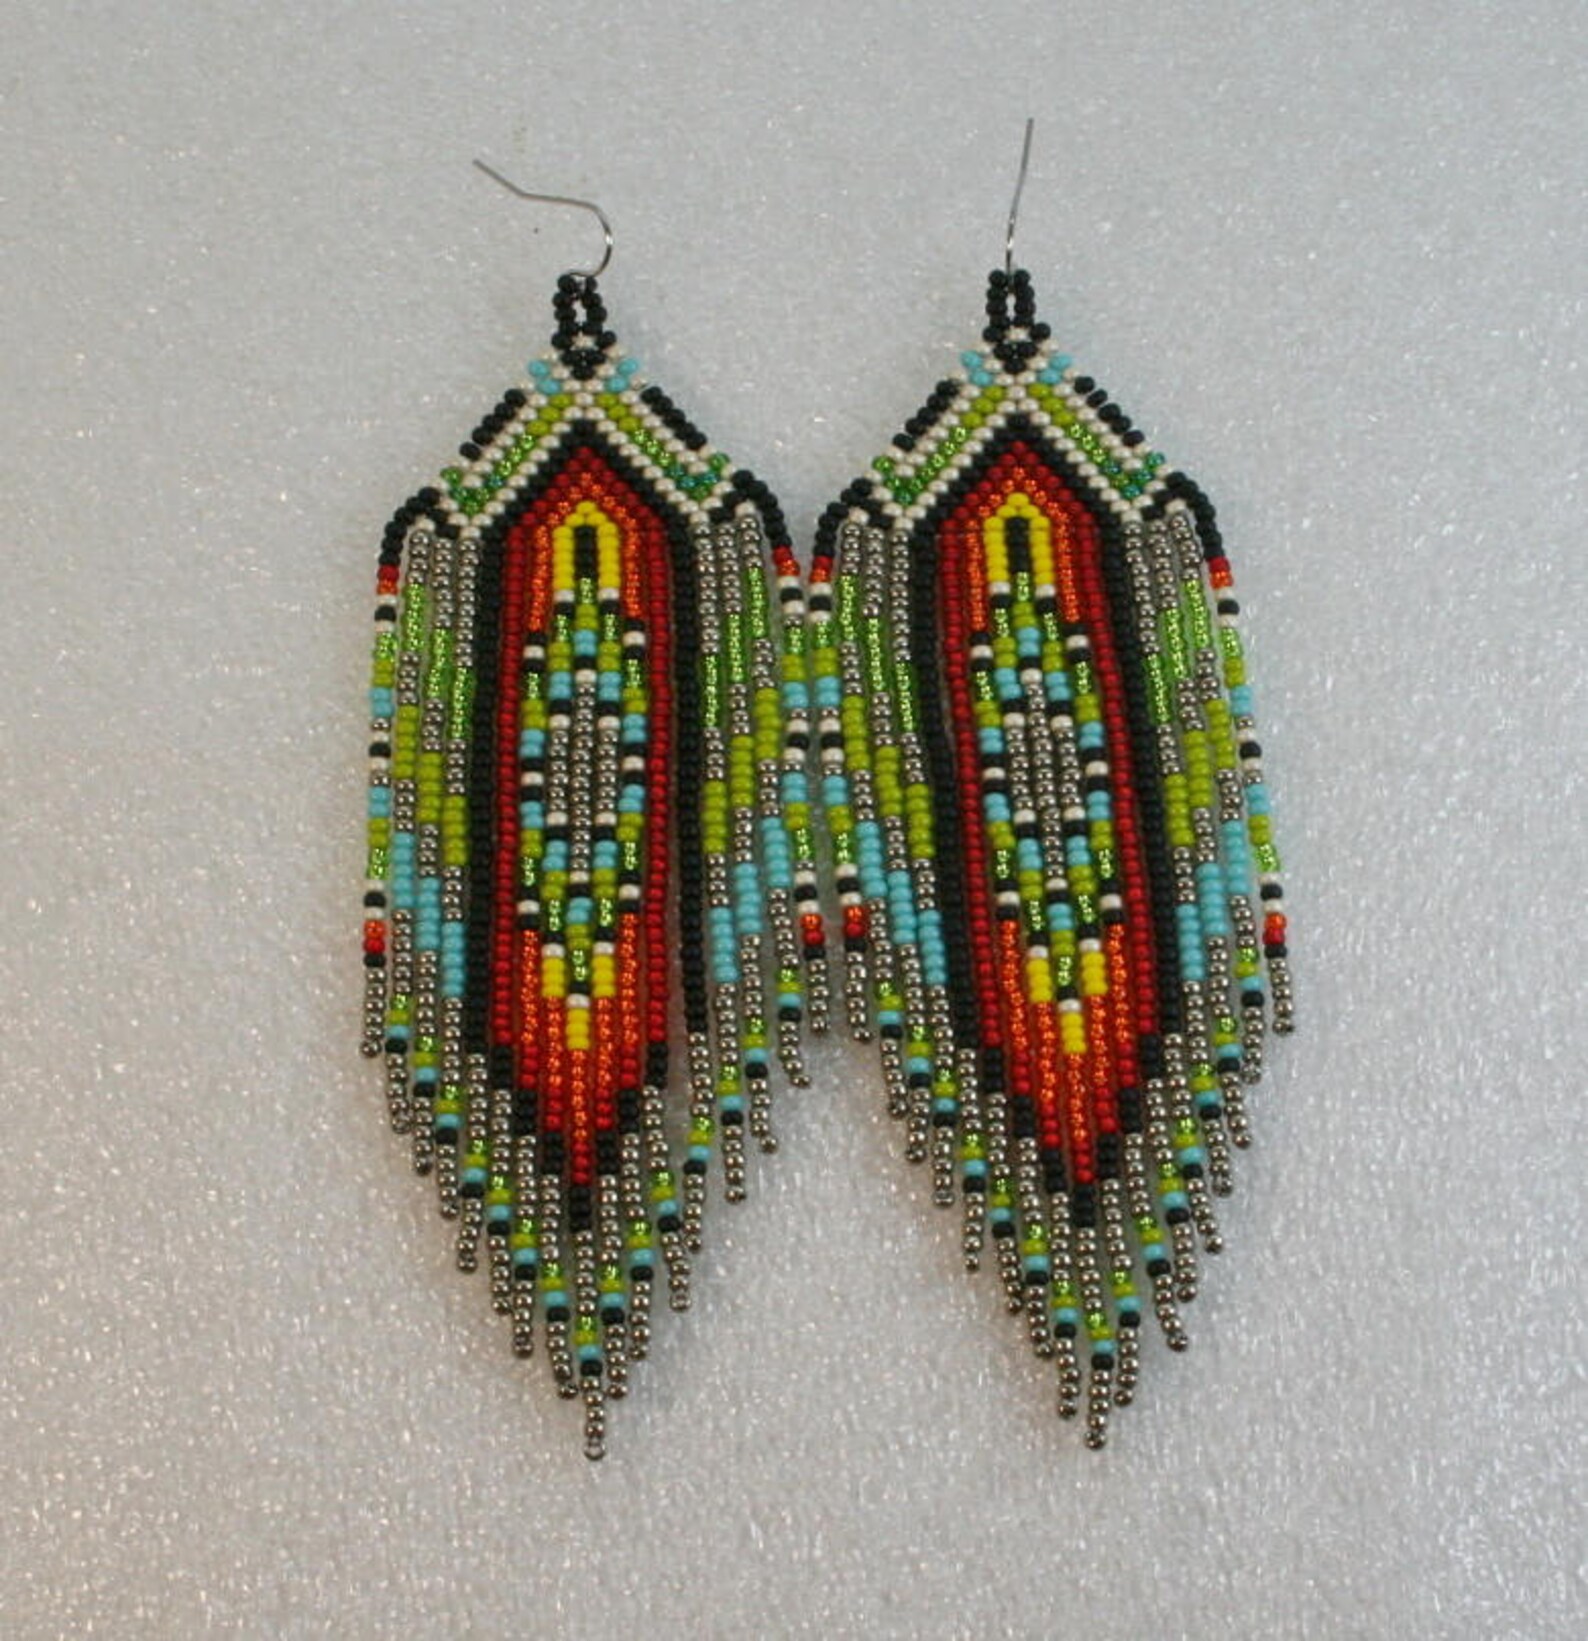 Fringe earrings Ethnic style Long Indian style beads | Etsy